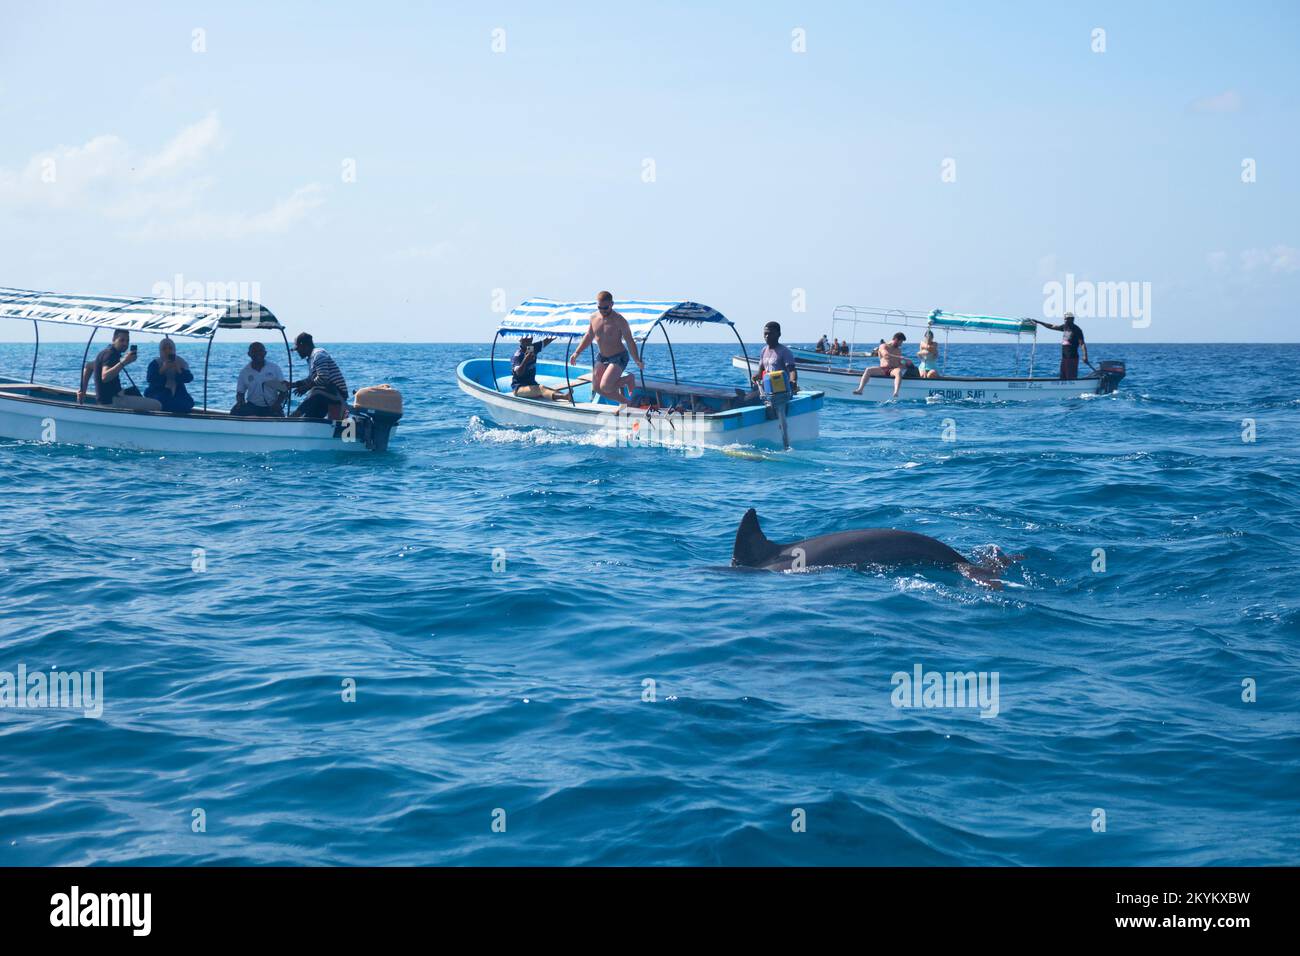 Les touristes sur la vue des dauphins voyant des excursions en bateau chasse les dauphins dans l'eau pour essayer de nager avec eux sur un site au large de la côte de l'atoll de Mnemba à Zanzibar, Banque D'Images